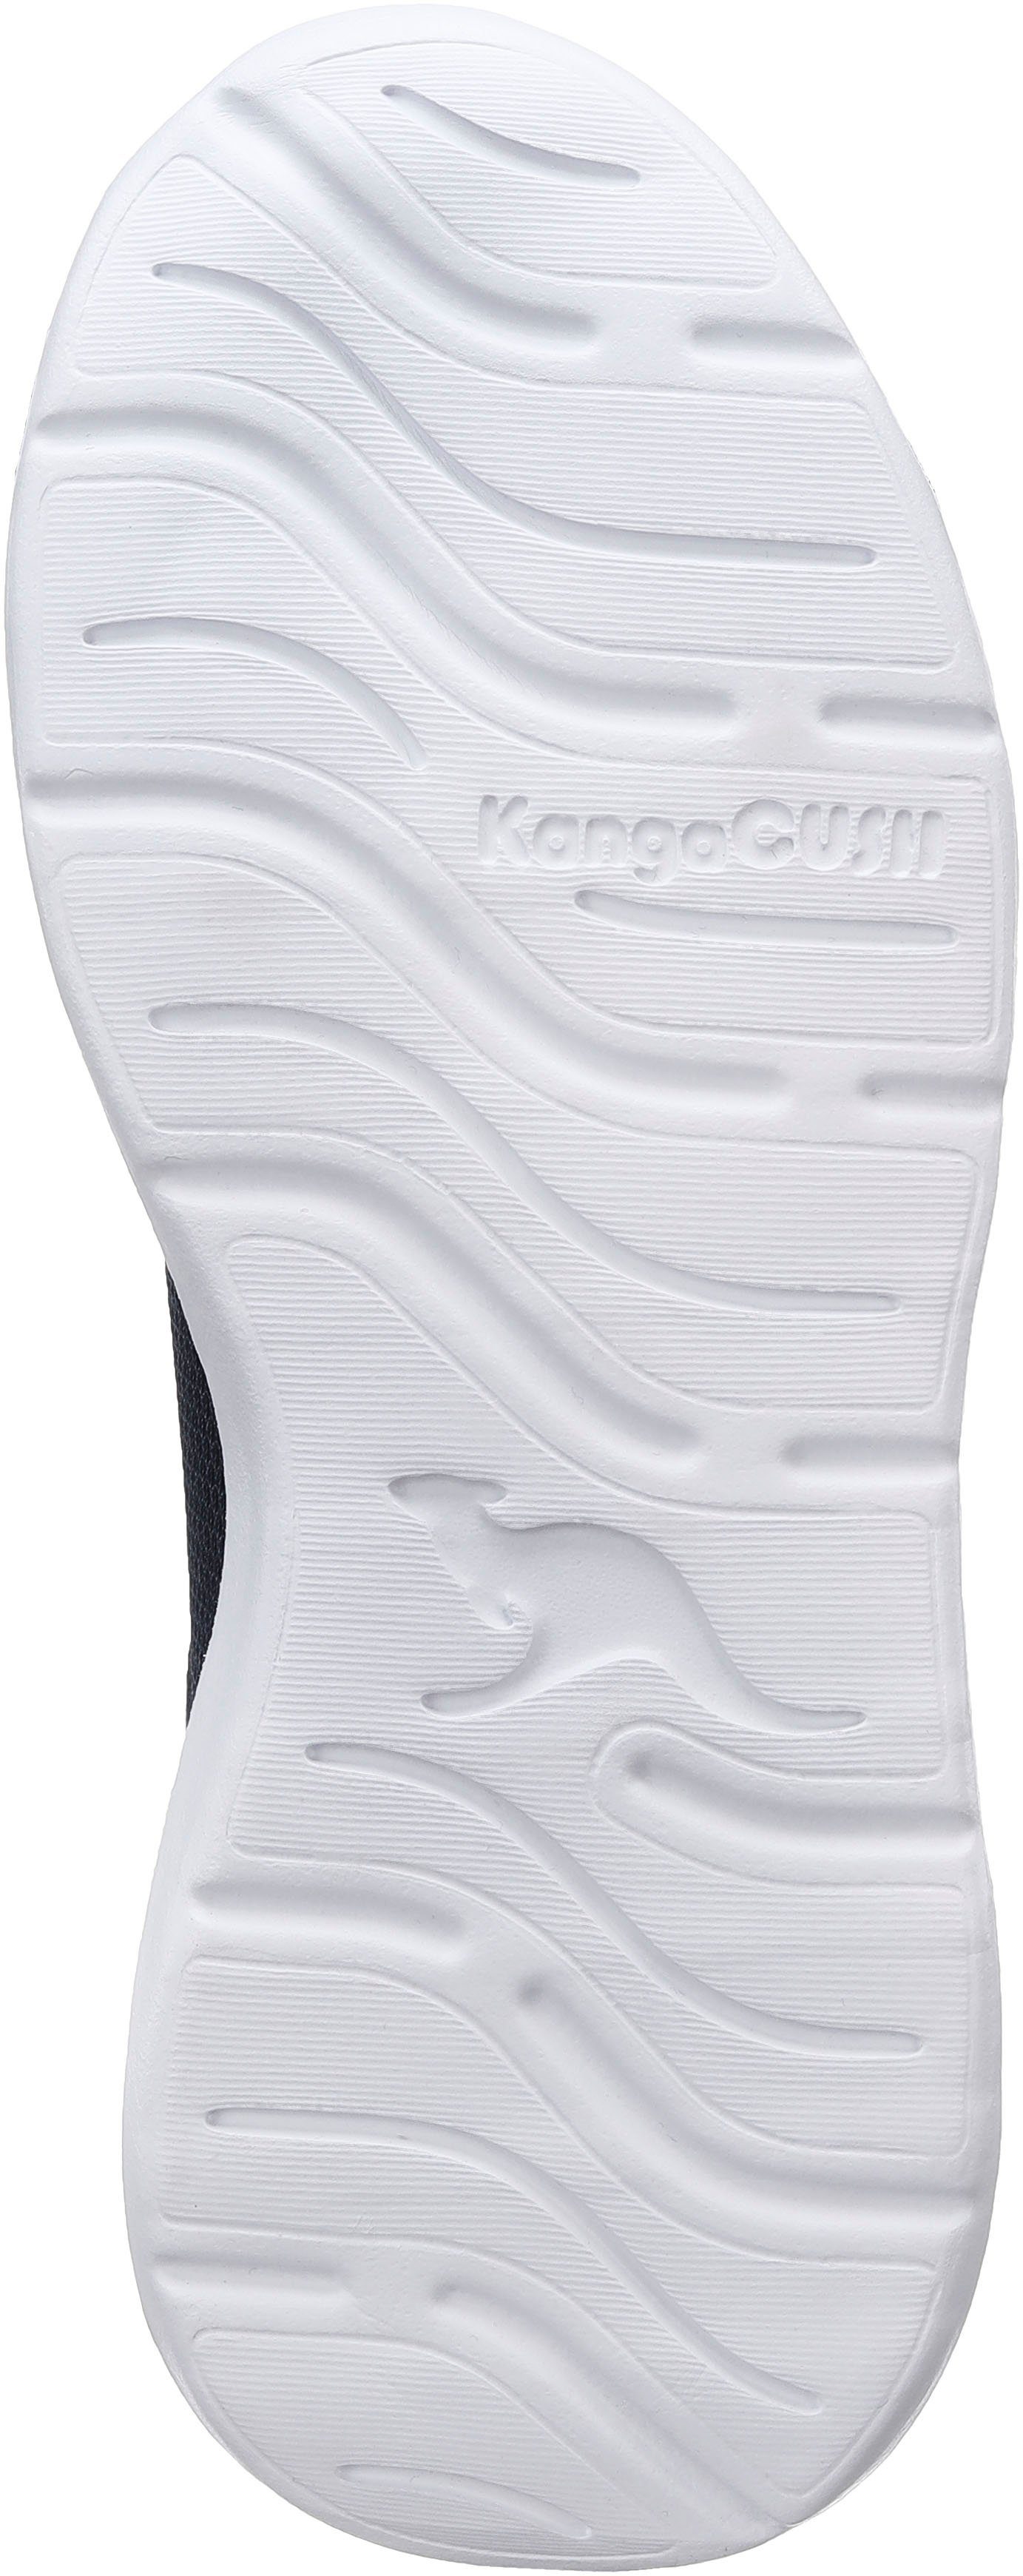 navy-lime und elastischen mit Klettverschluss Sneaker Schnürsenkeln KL-Rise EV KangaROOS